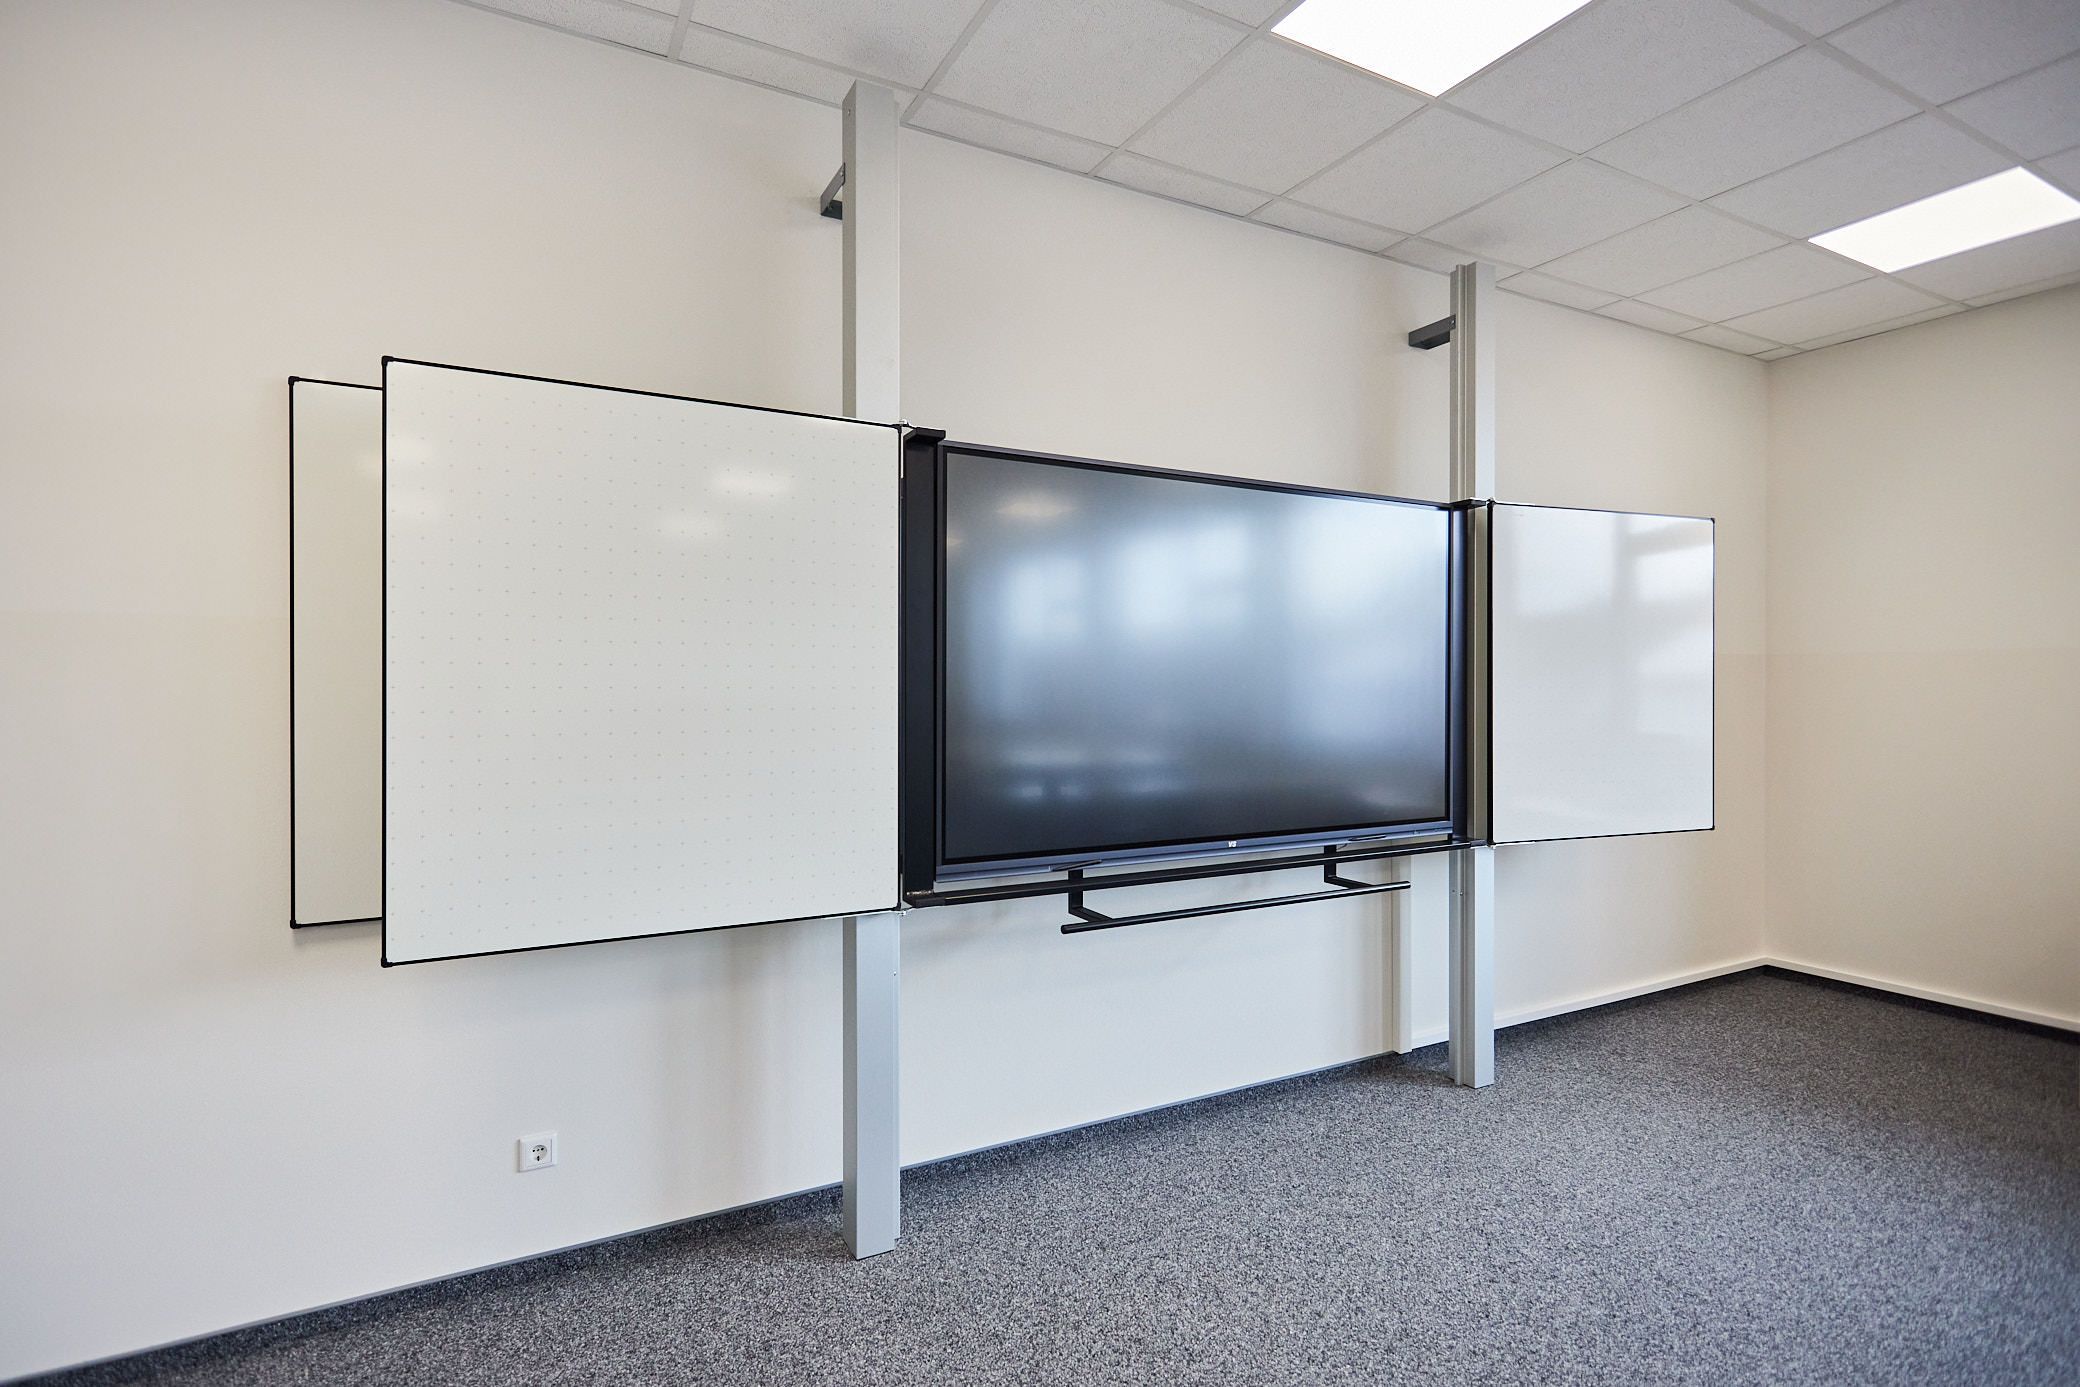 Klassenraum in der AHF-Grundschule Detmold. Digitale Tafel. Ein Projekt von EPU Architekten in Detmold.